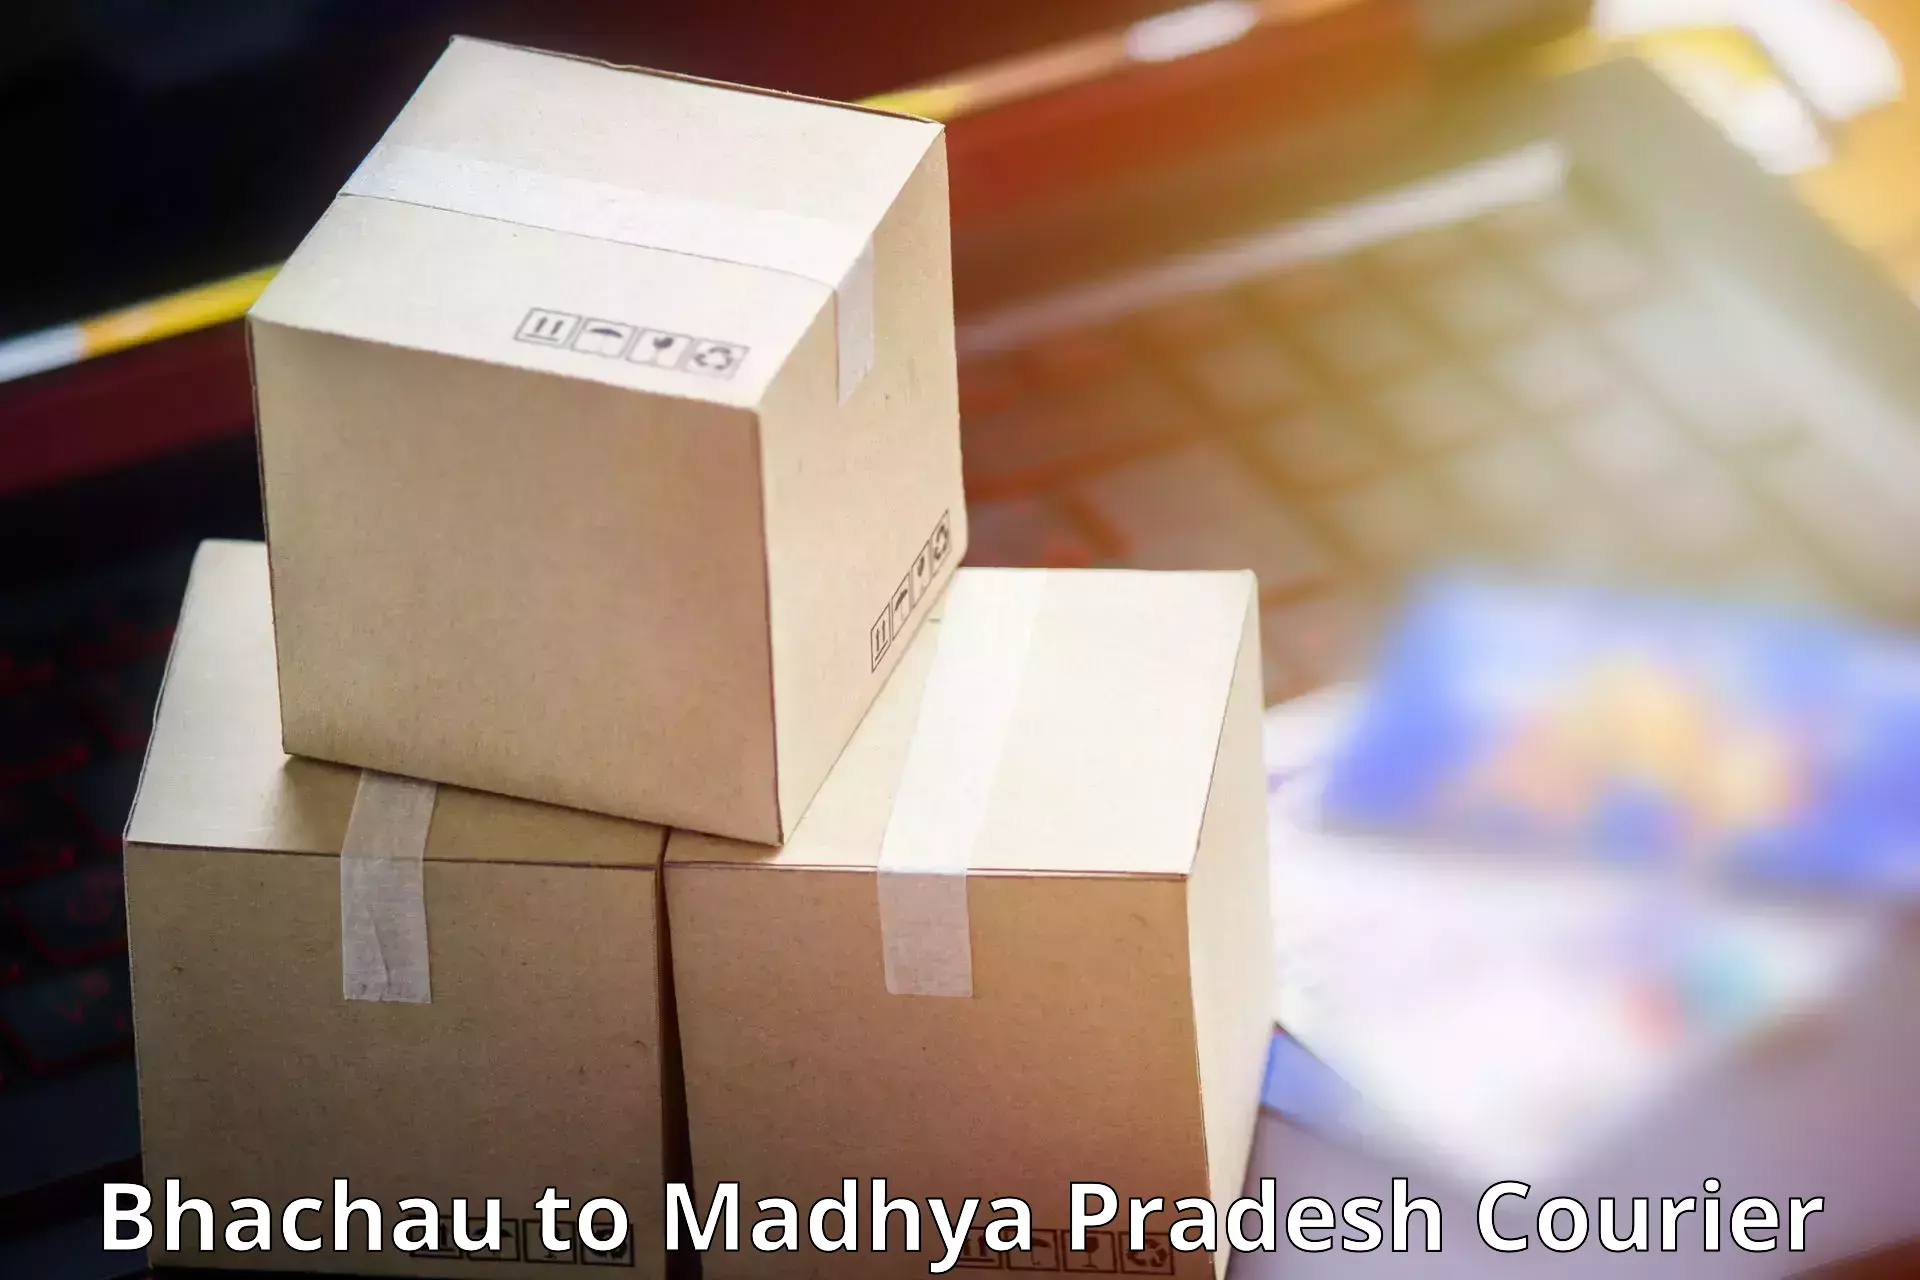 Courier insurance in Bhachau to Madhya Pradesh